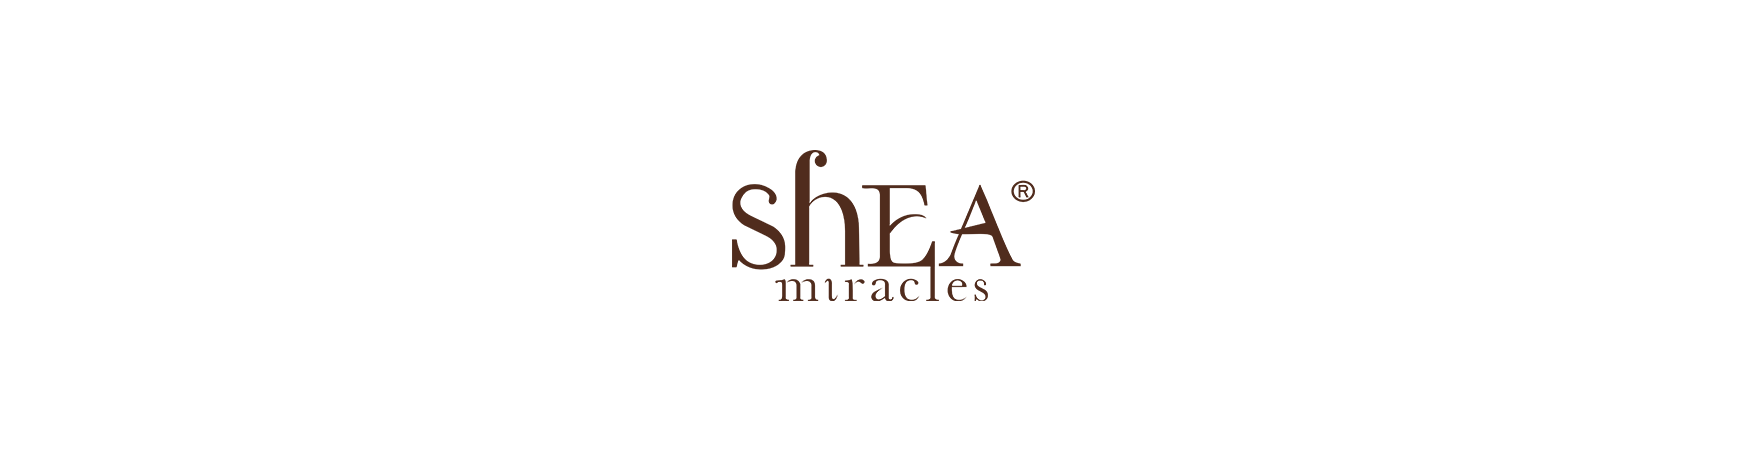 Shea Miracles